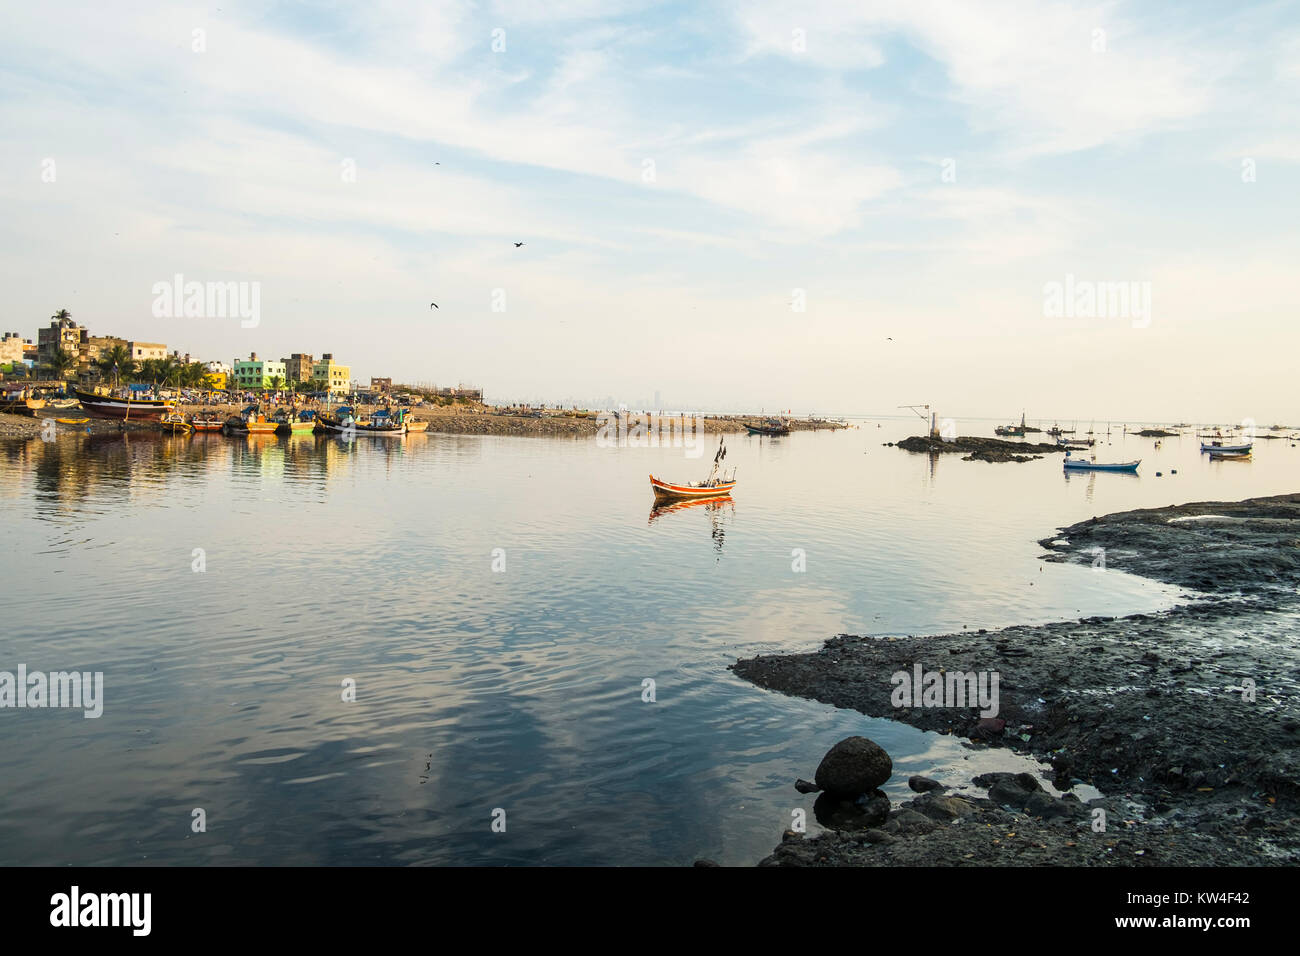 Madh Island ist eine arme vernachlässigte Teil von Mumbai, in denen unbehandelte Abwässer und Müll aus der Landschaft. Stockfoto